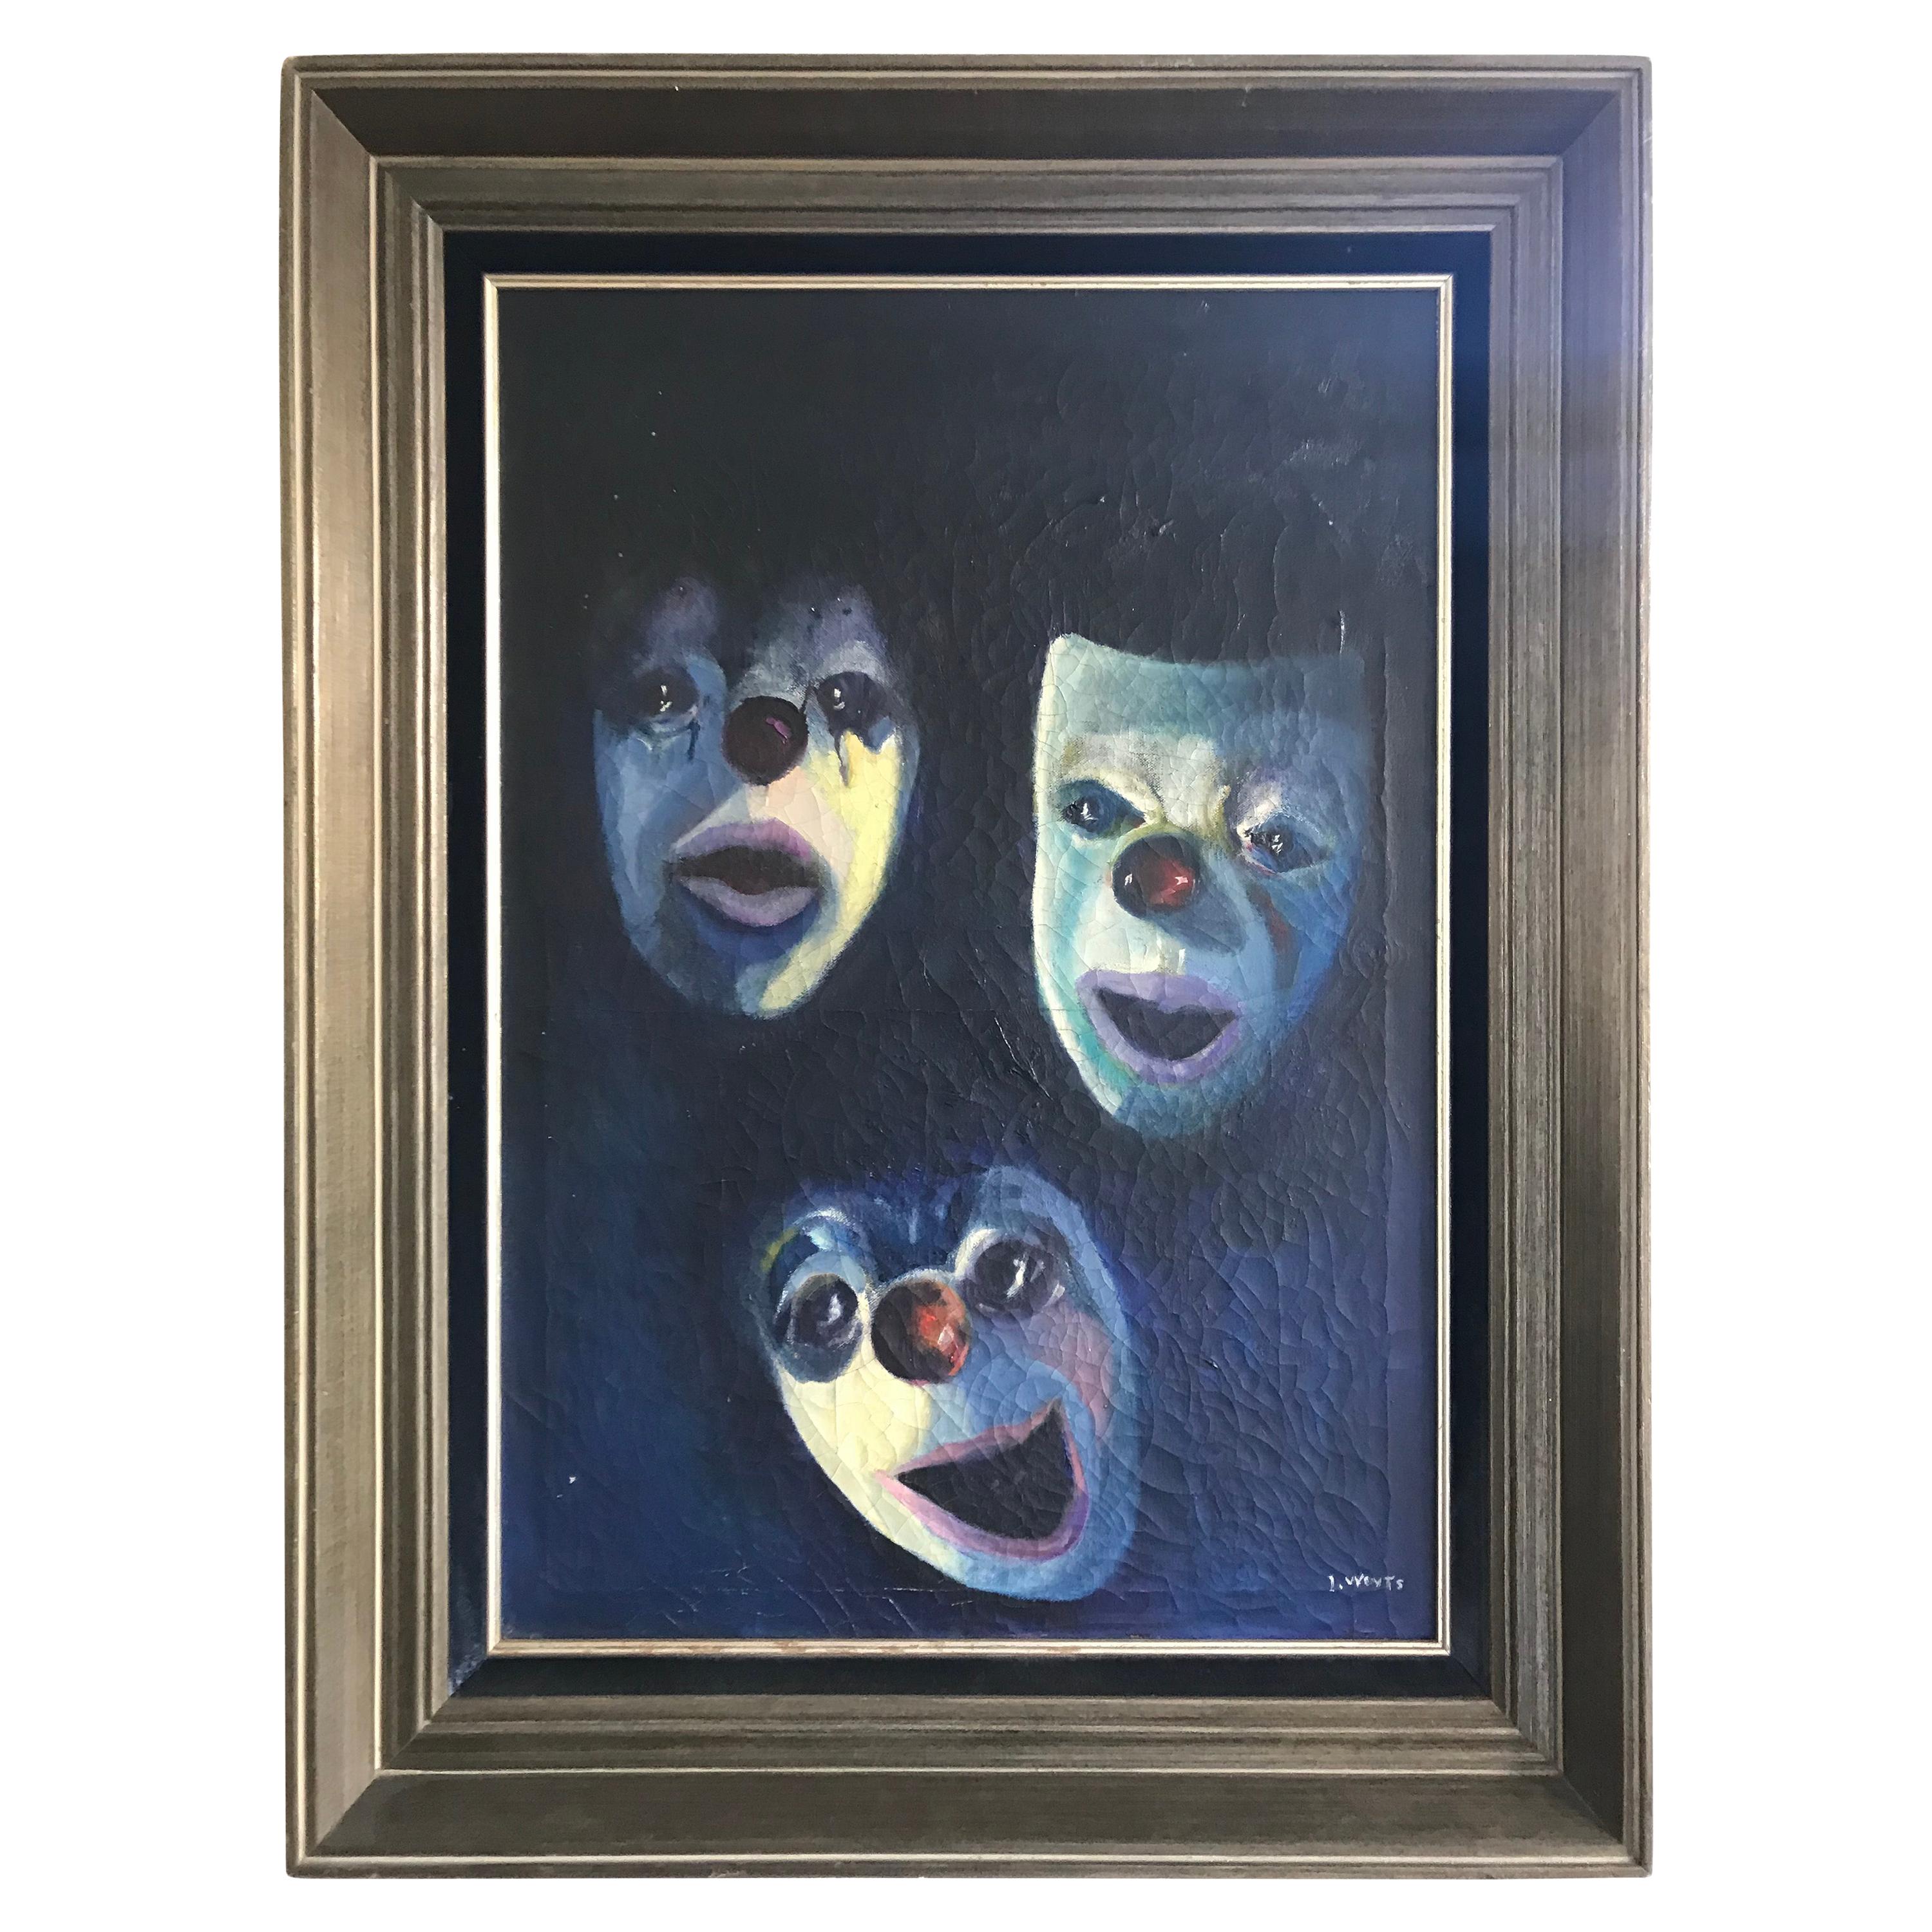 Antike Öl auf Leinwand Gemälde Zeigt Emotional Clown / Mime Masken von I. Weyts